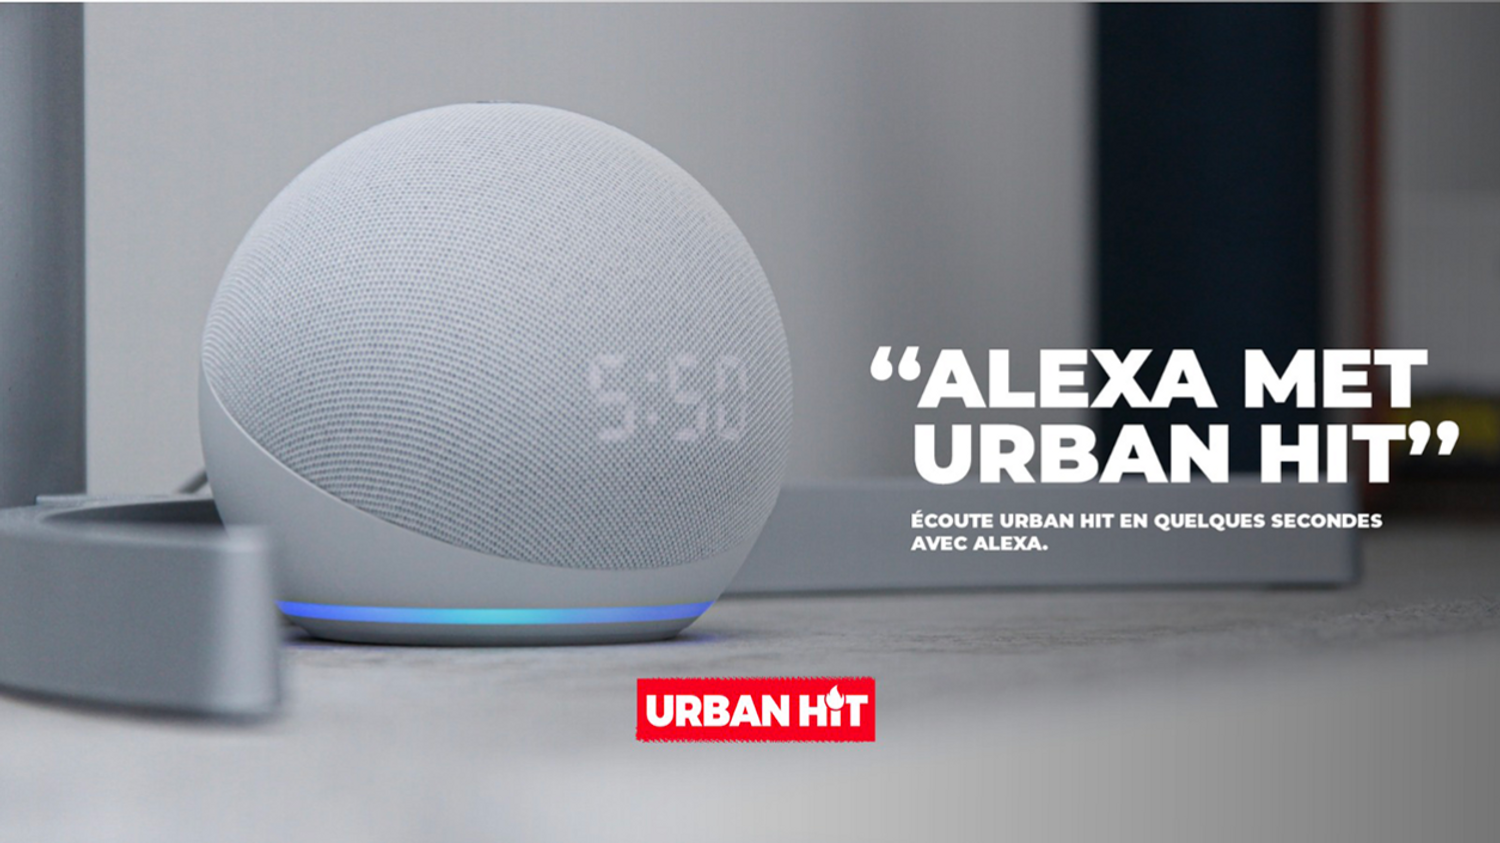 Alexa met urban hit